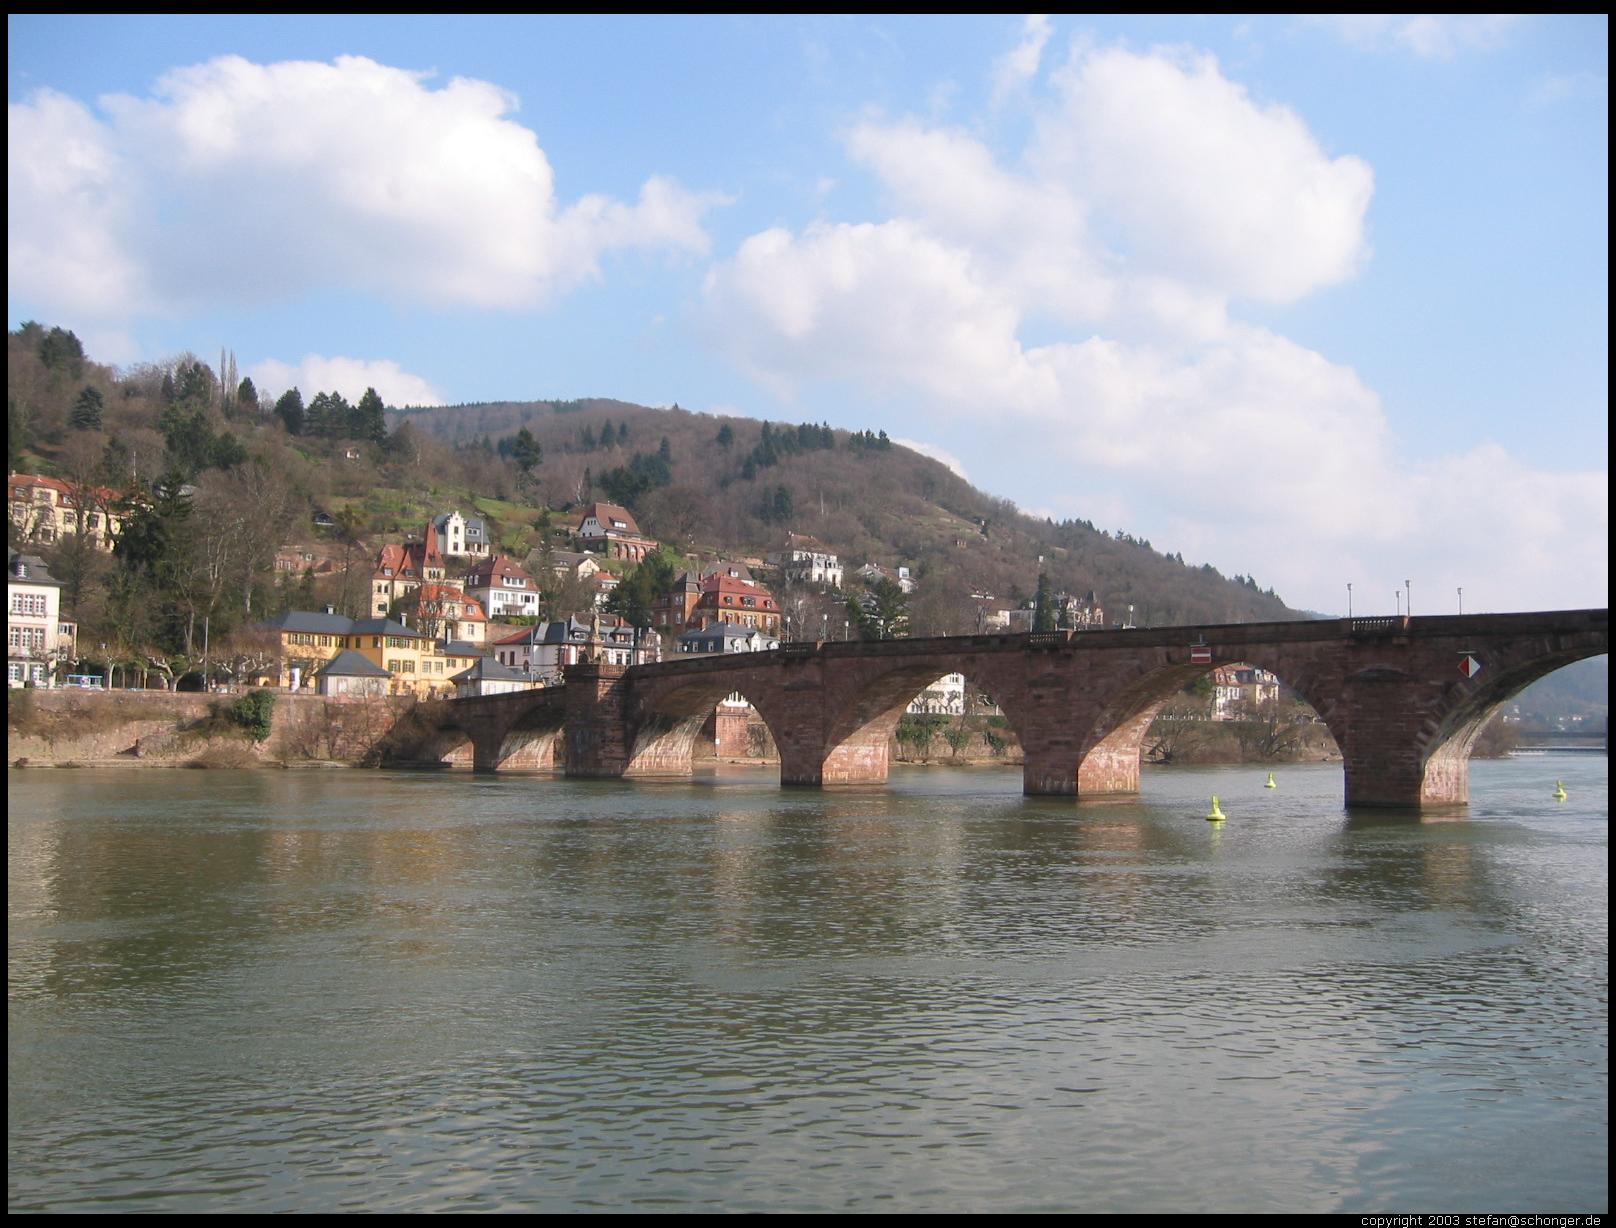 Heidelberg, 2003